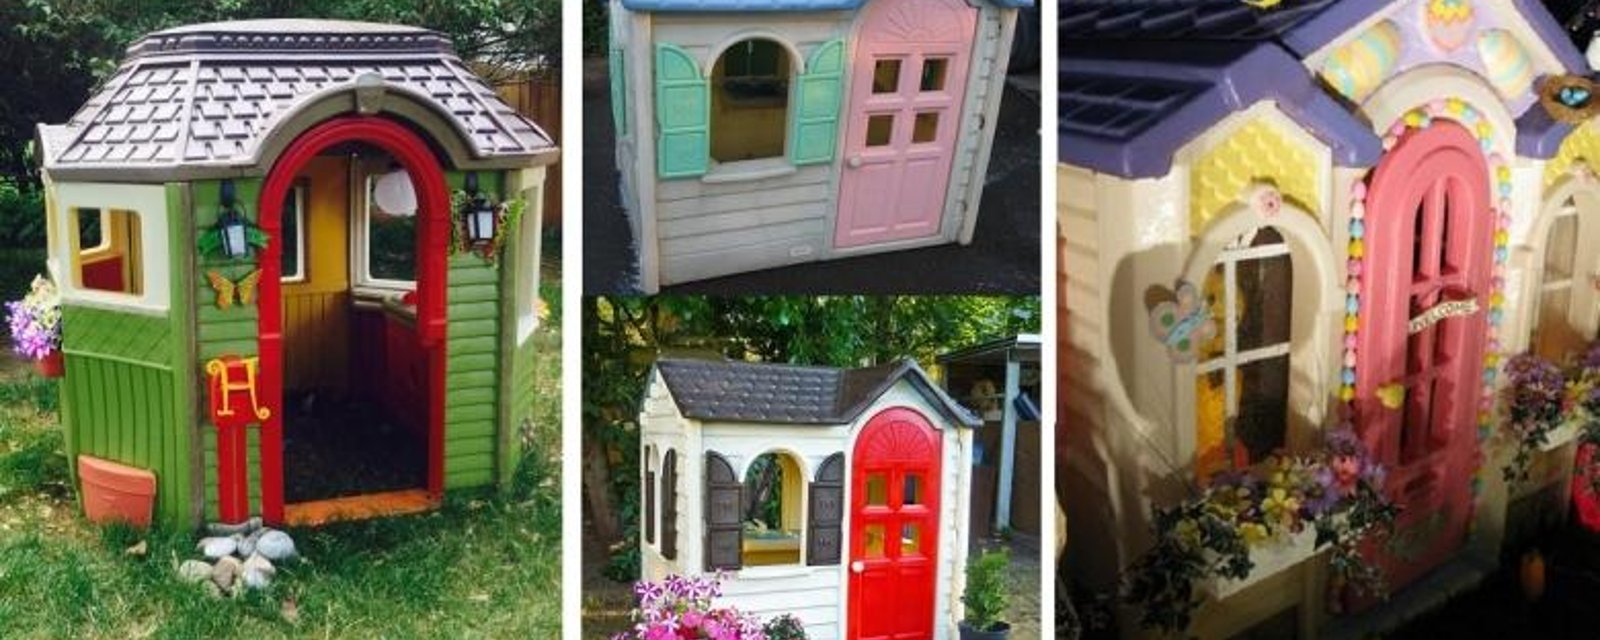 12 Petites maisons Littles Tikes repeintes, pour vous inspirer! 